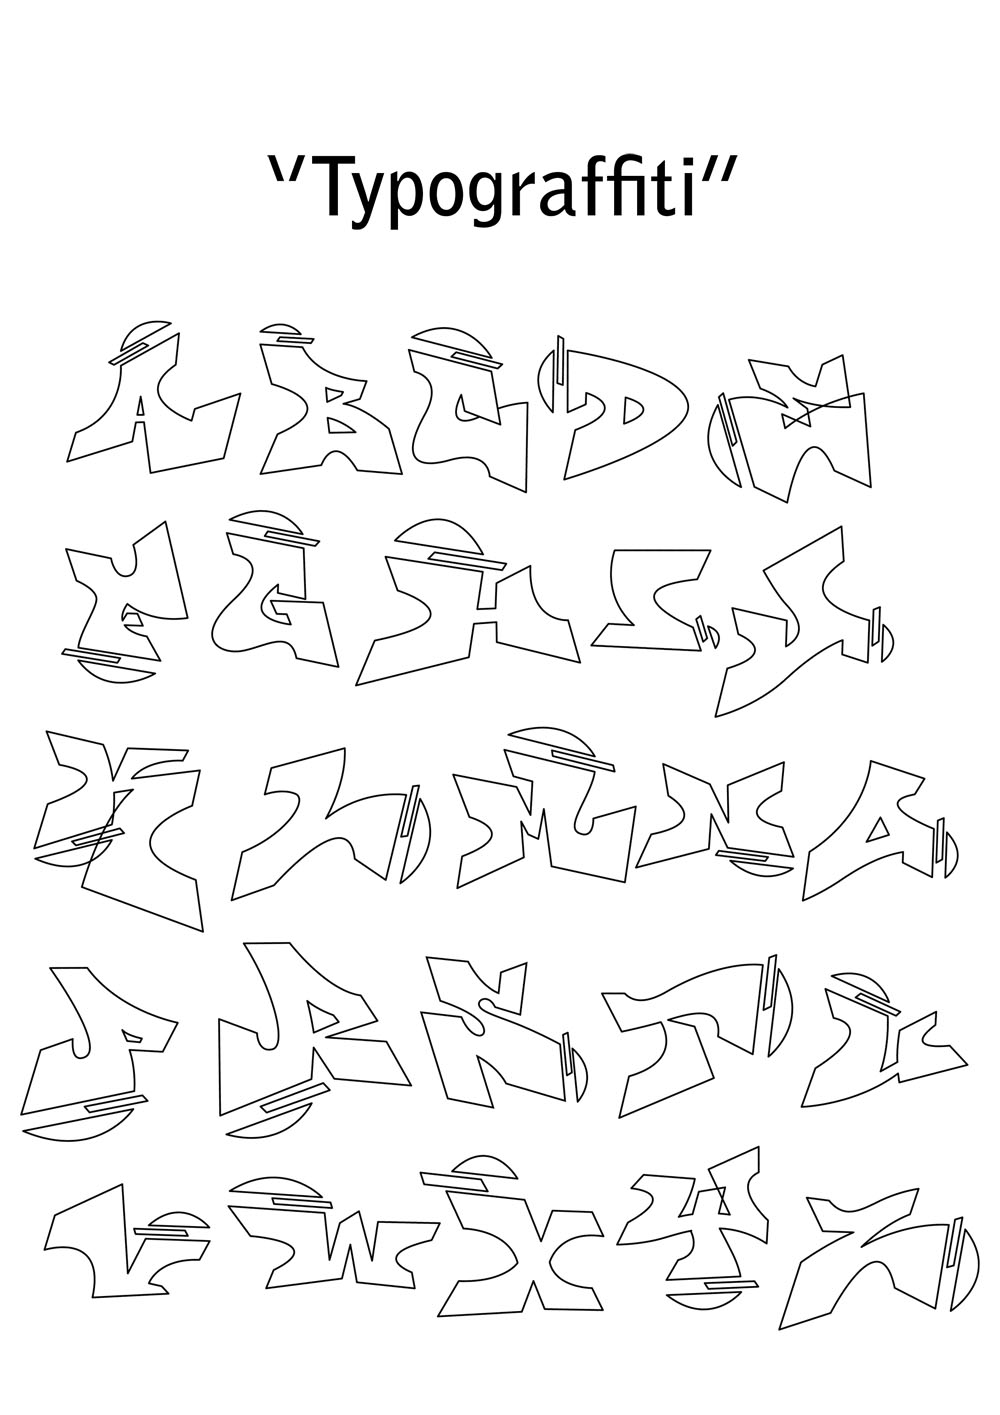  Gambar Graffiti Alphabet Collection Drawing Bagi Teman2 